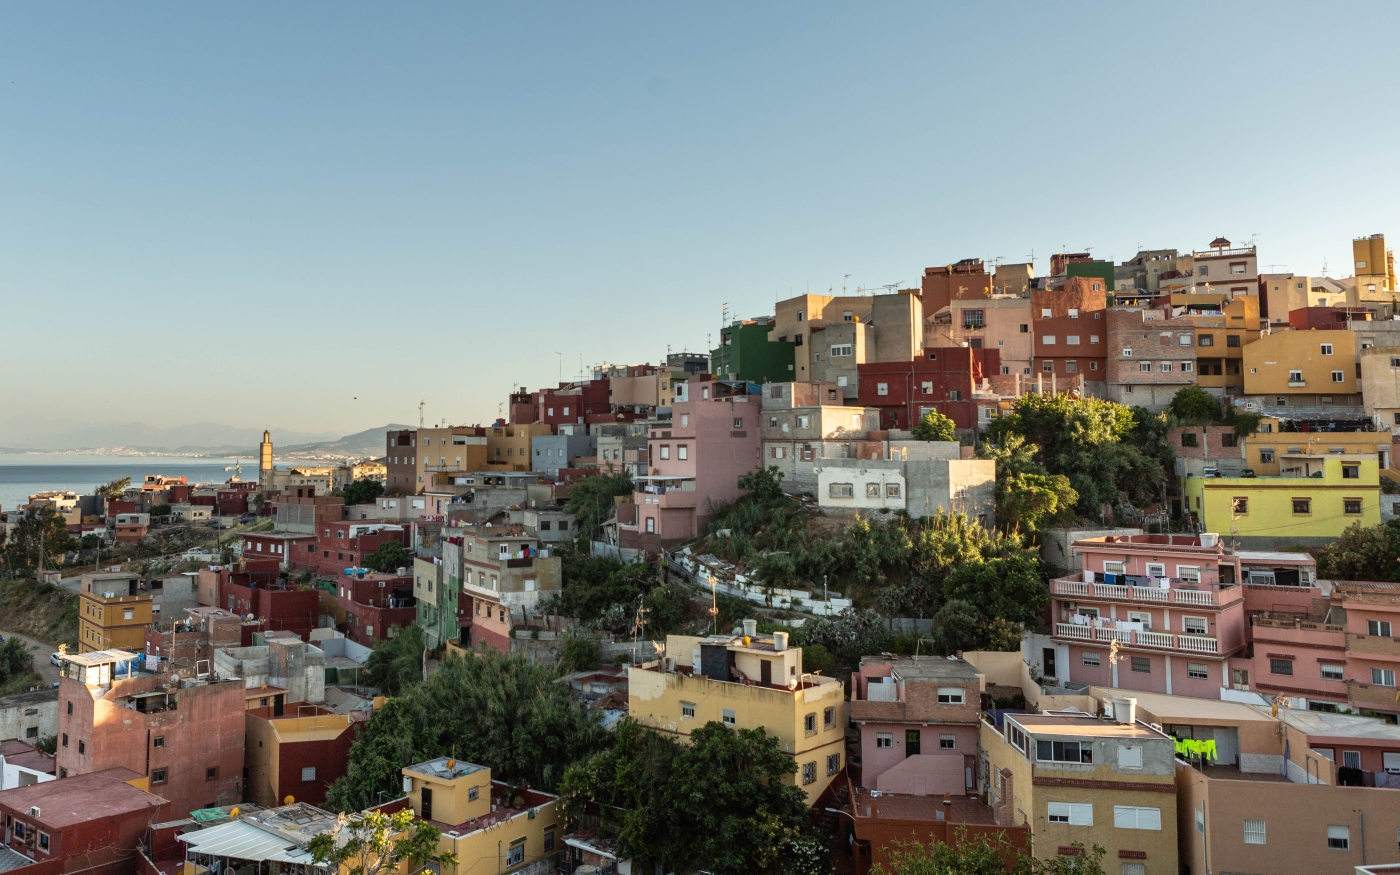 Le quartier de Principe, à Ceuta, est l’un des quartiers les plus pauvres de toute l’Espagne (Marta Maroto)